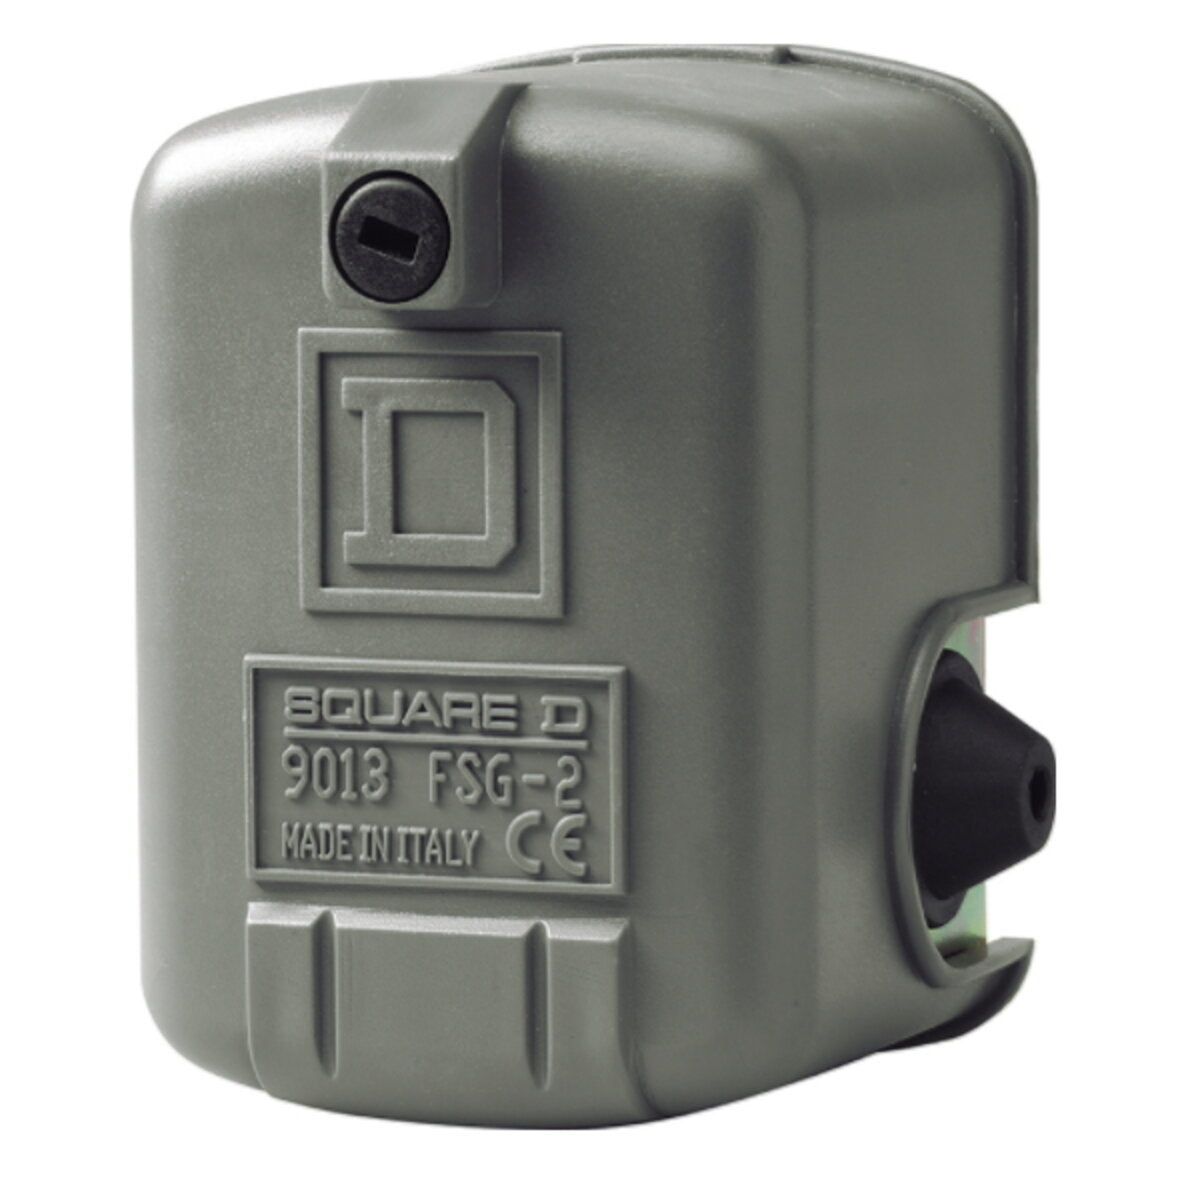 Square d fsg2 pressure switch for autoclave